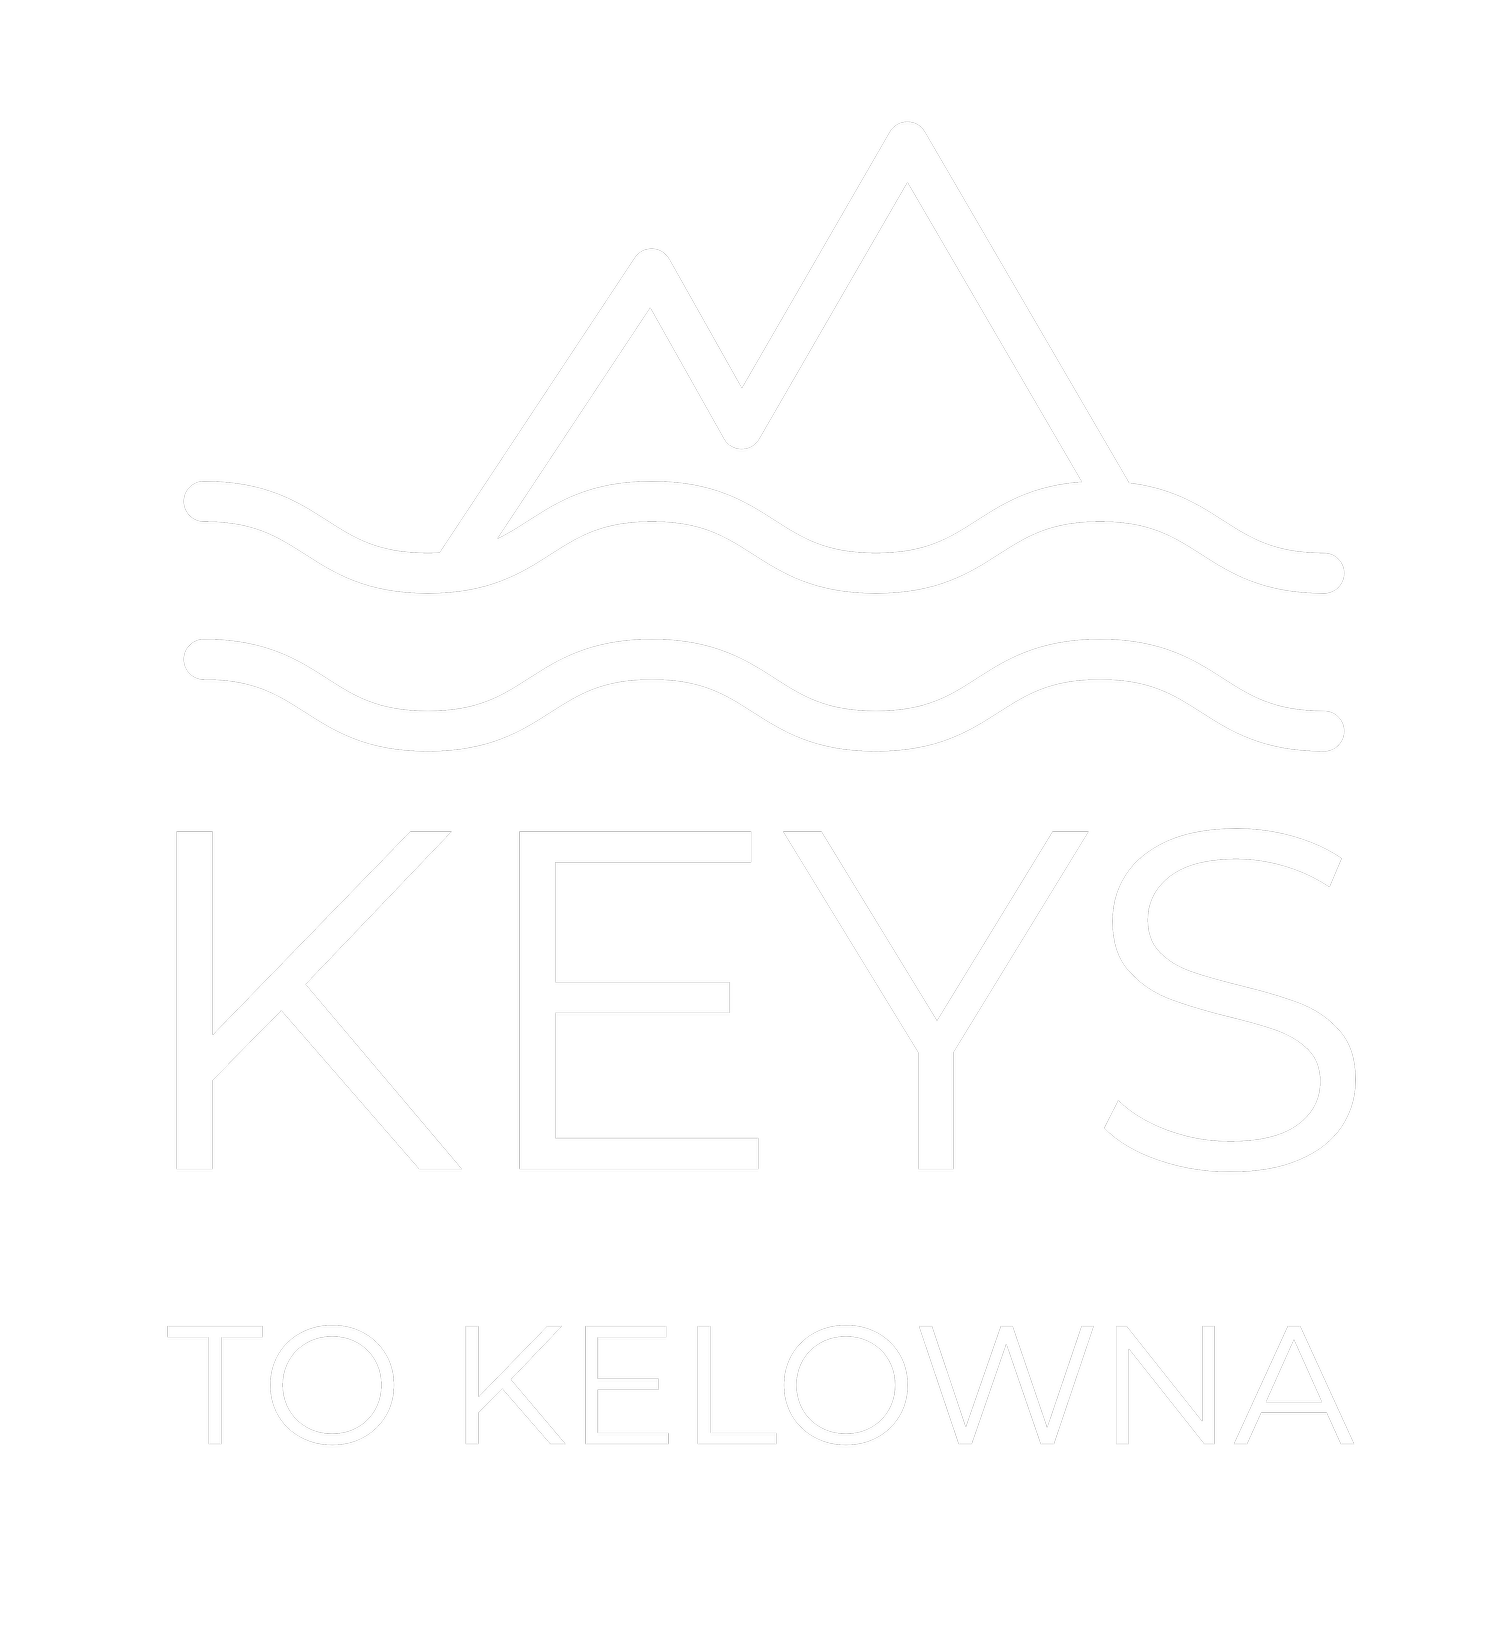 Keys to Kelowna Properties - Luxury Vacation Rental and Airbnb Management in Kelowna